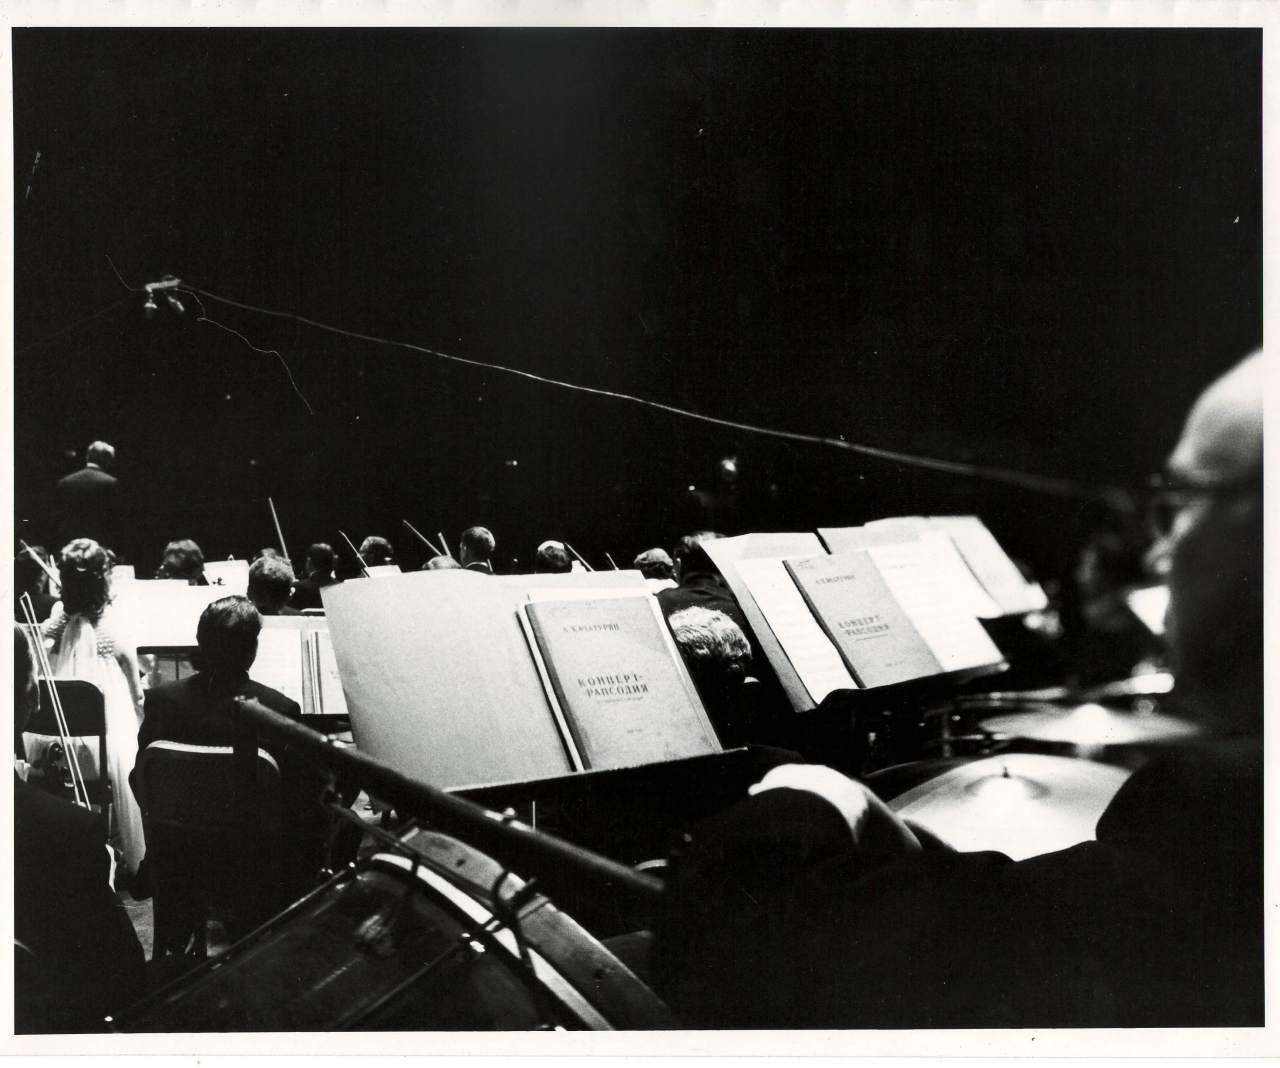 Լուսանկար. Ա. Խաչատրյանը Ամերիկայի ազգային  սիմֆոնիկ նվագախումբը ղեկավարելիս՝ Նյու Յորքի Քարնեգի Հոլ համերգասրահում